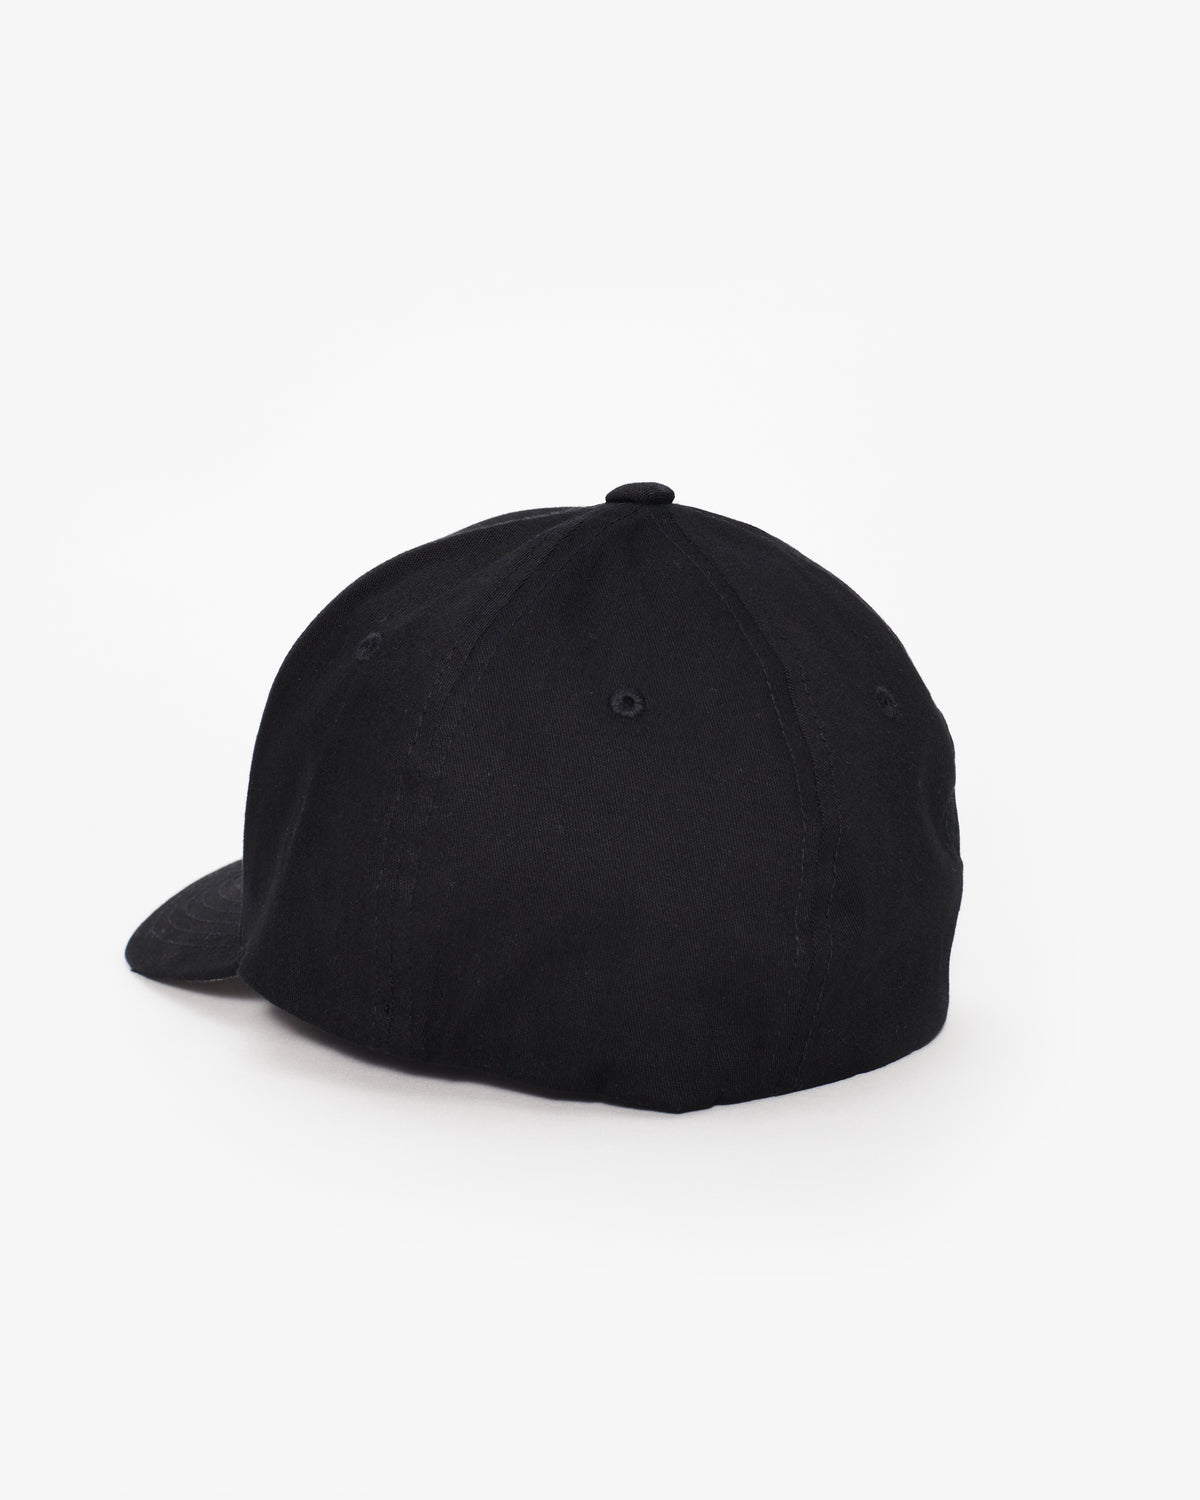 Equinox Flex Fit Hat – The Shop at Equinox